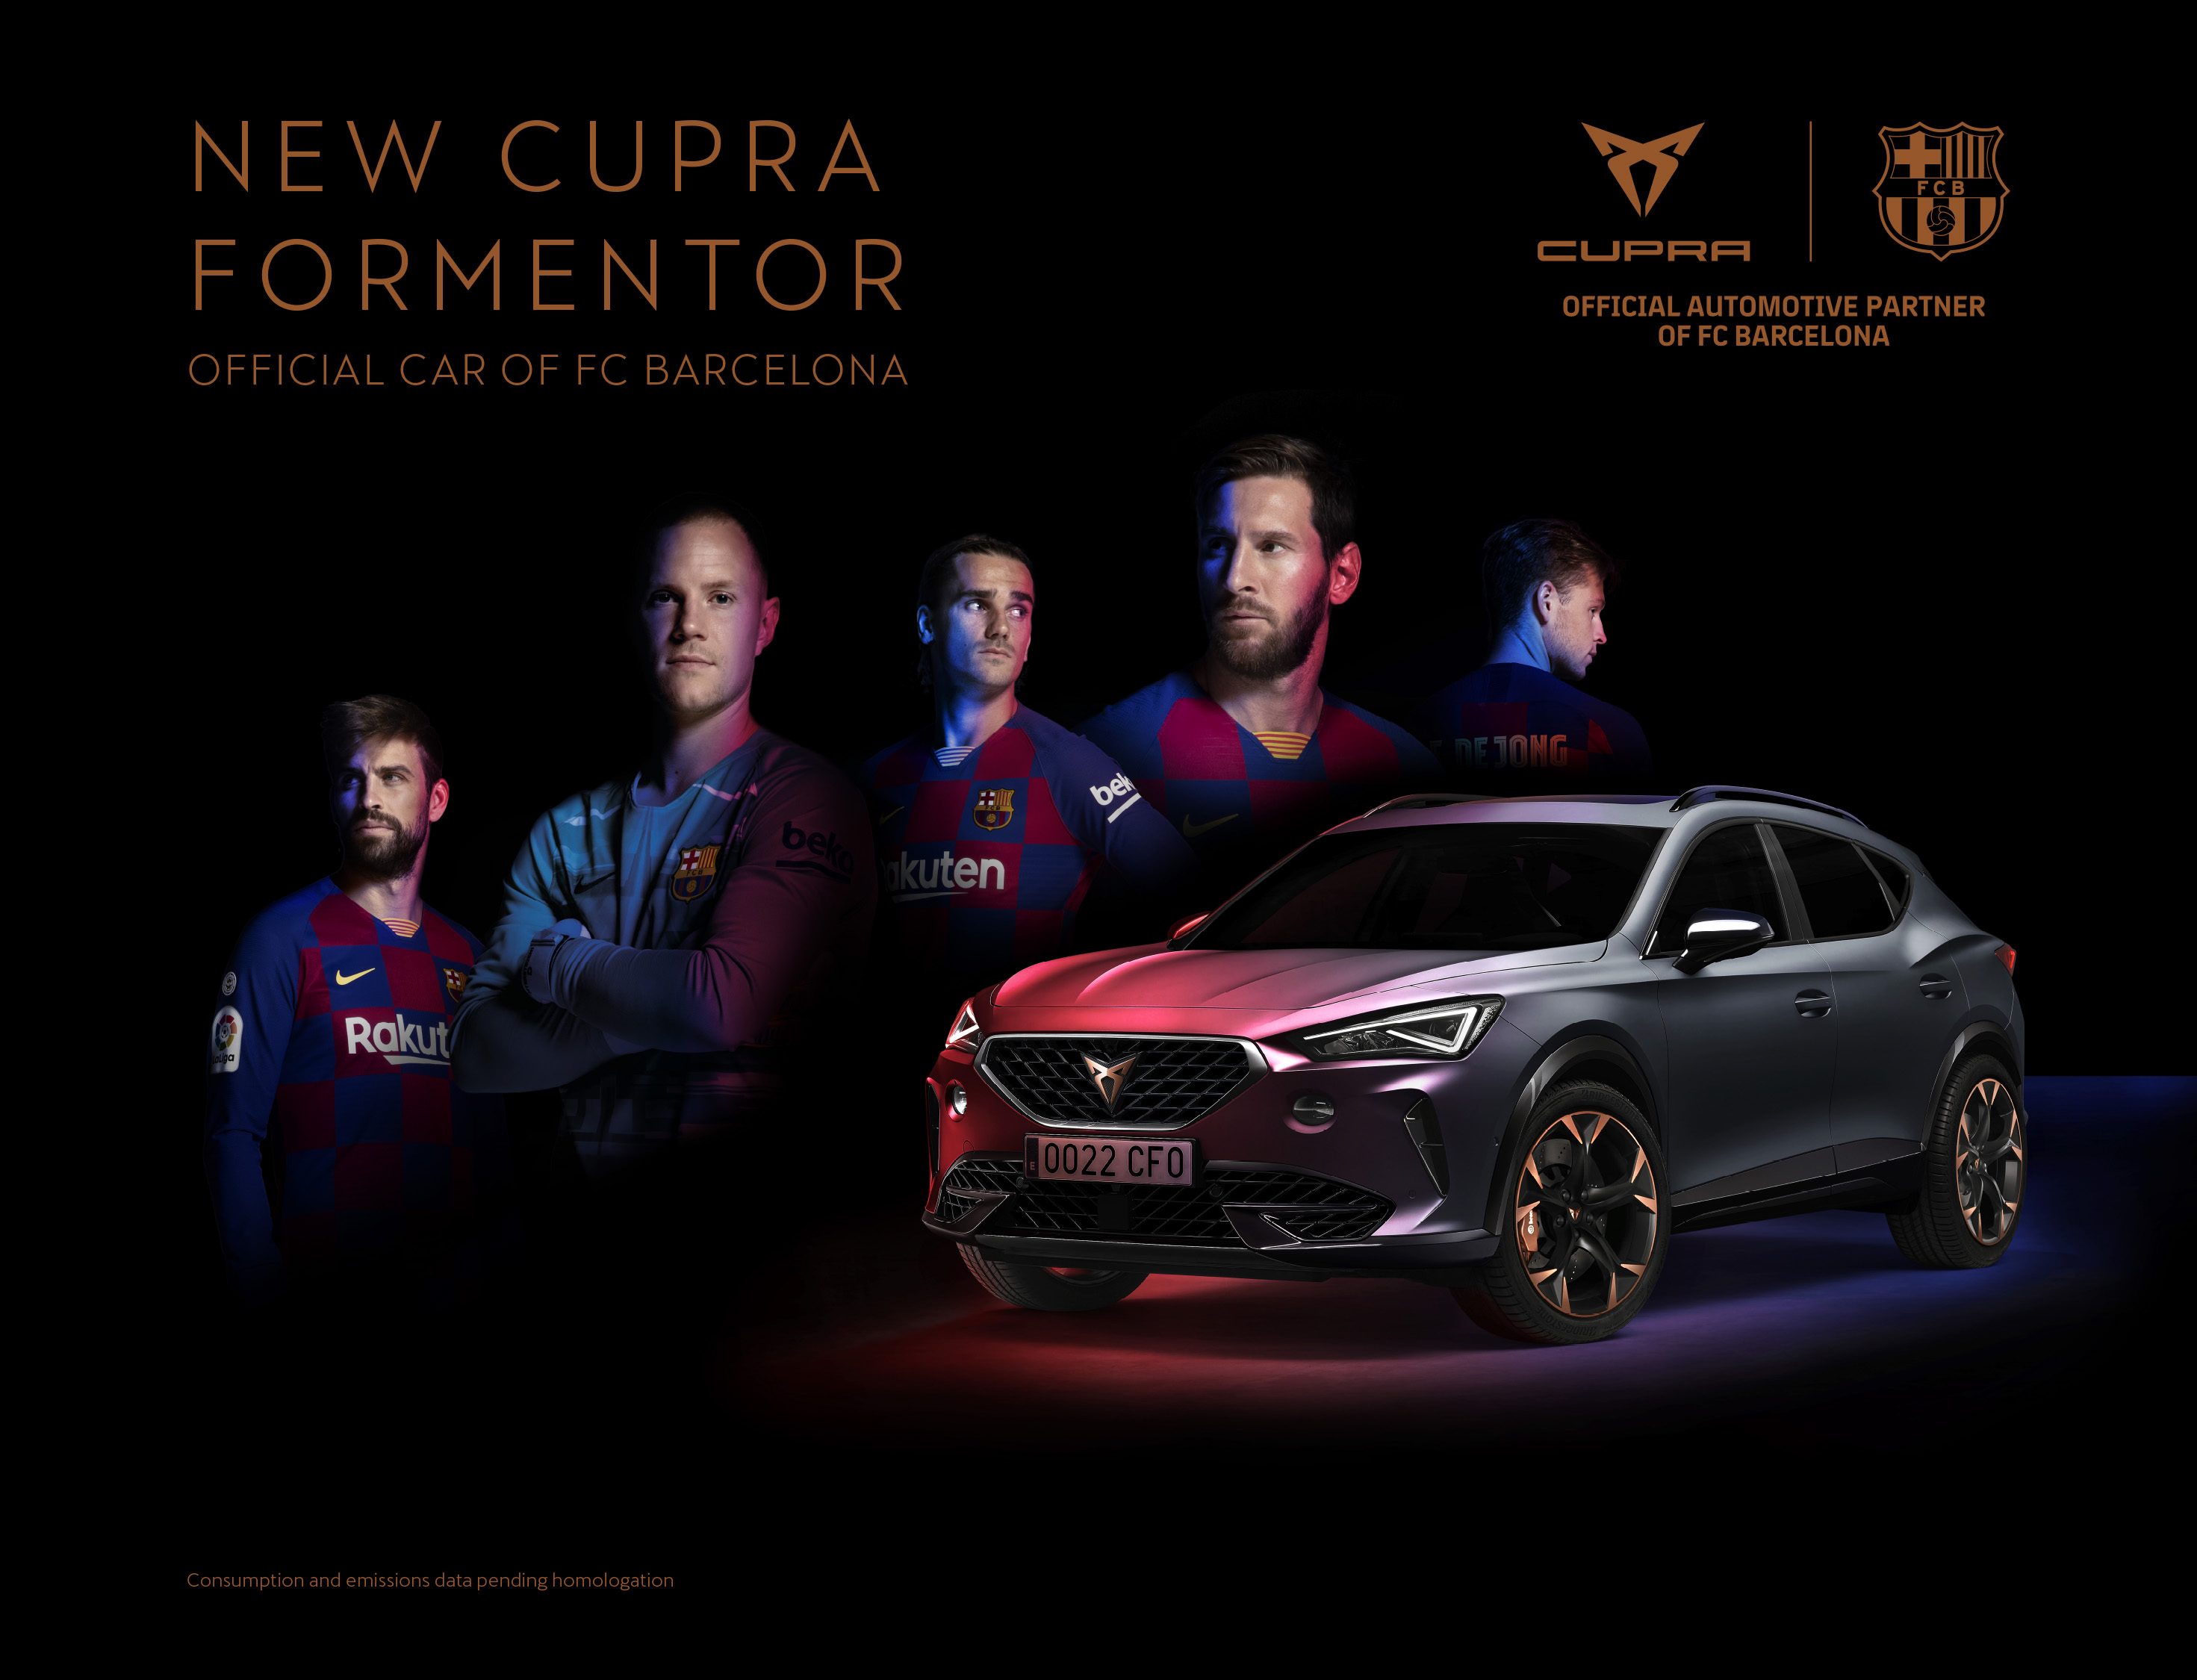 Cupra Formentor oficjalnym samochodem FC Barcelona